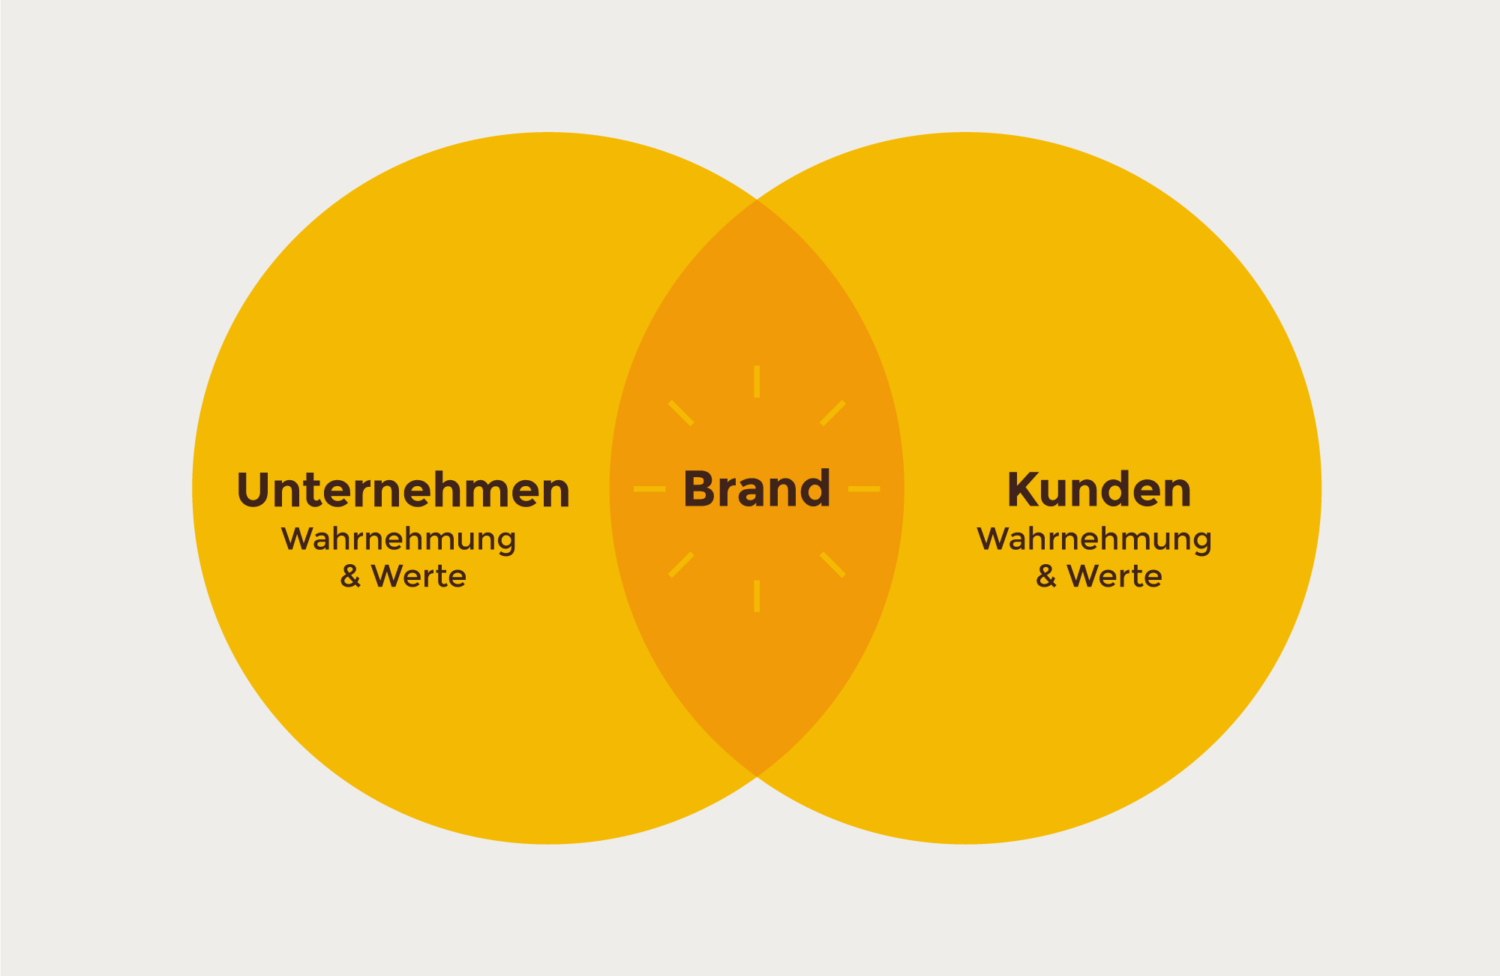 herr-buerli-branding-branding-diagram